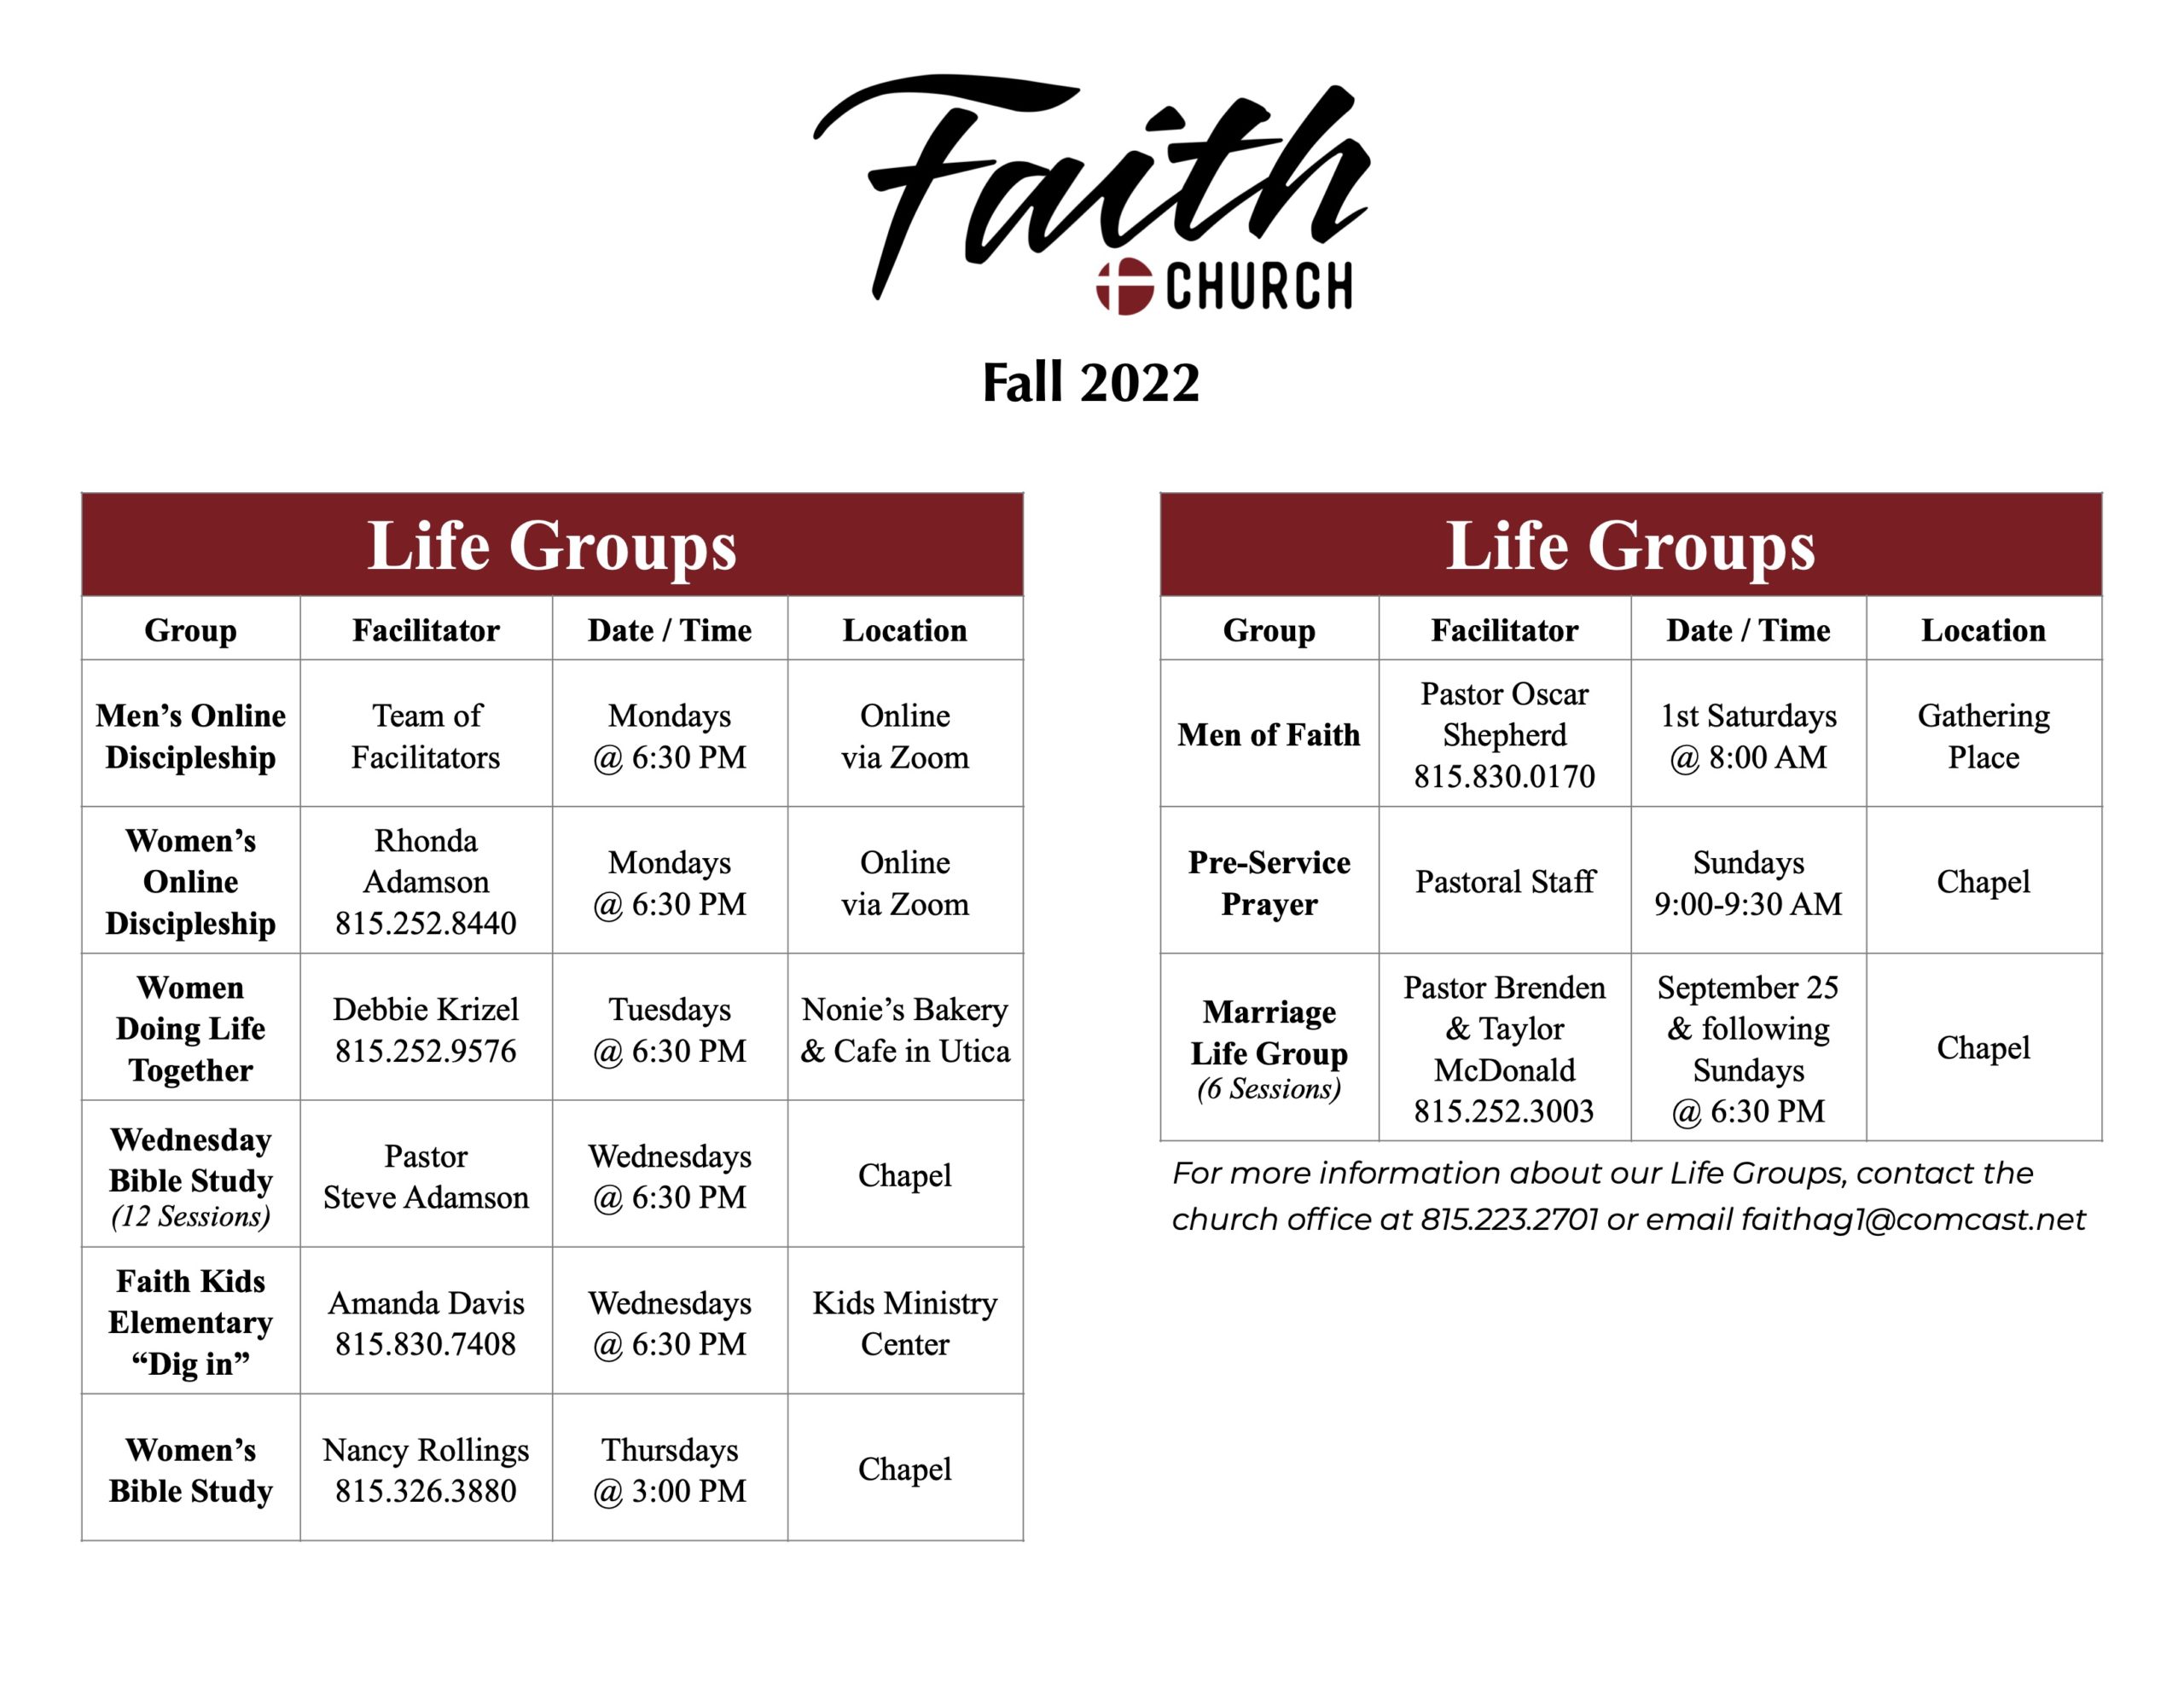 Faith Church Life Group Brochure Fall 2022 for Website